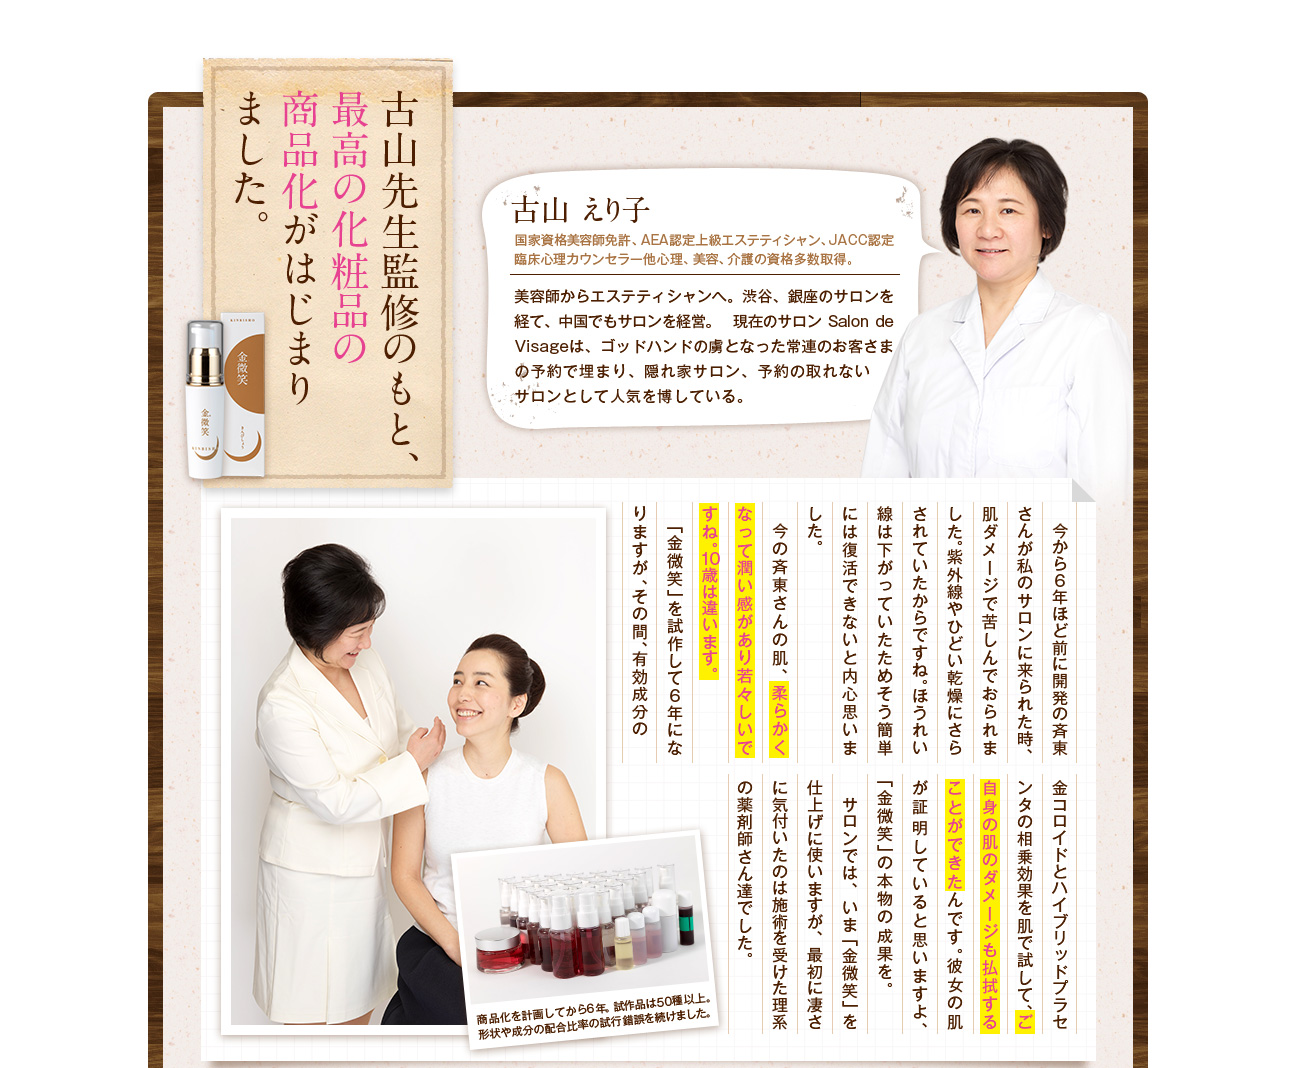 古山先生監修のもと、最高の化粧品の商品化がはじまりました。